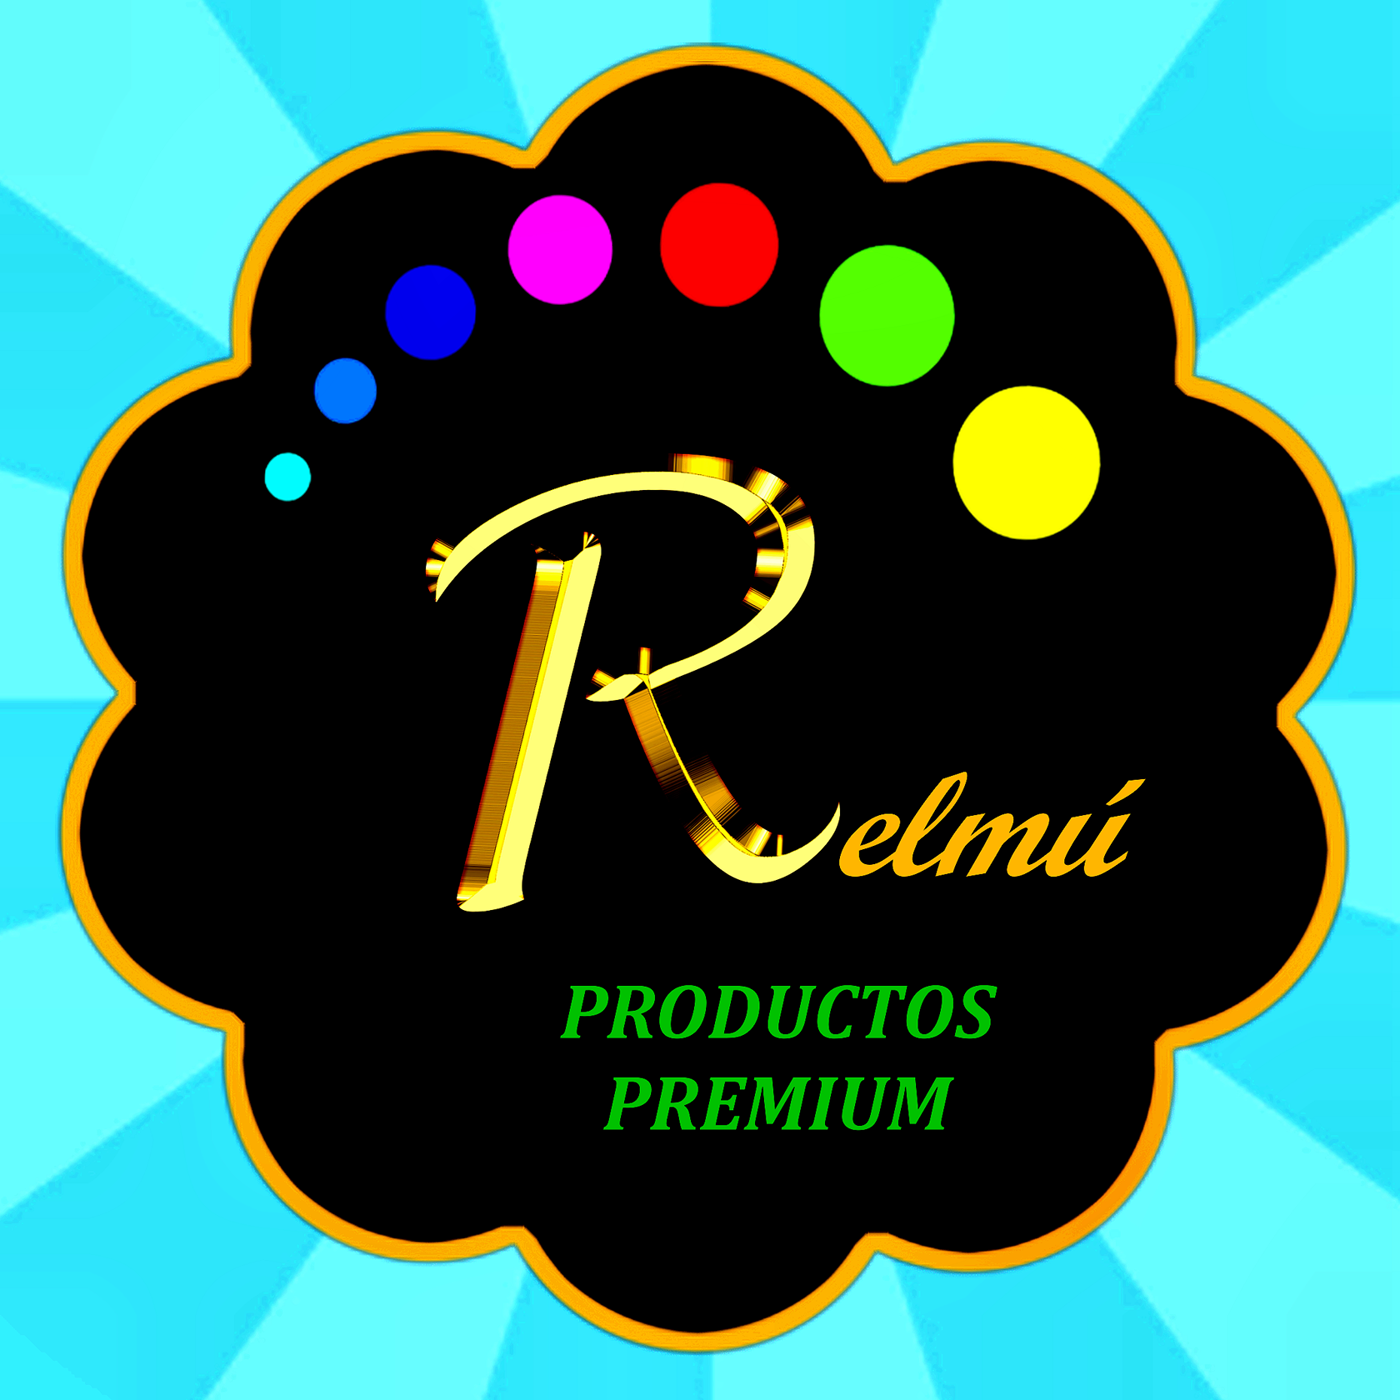 Relmú Productos Premium